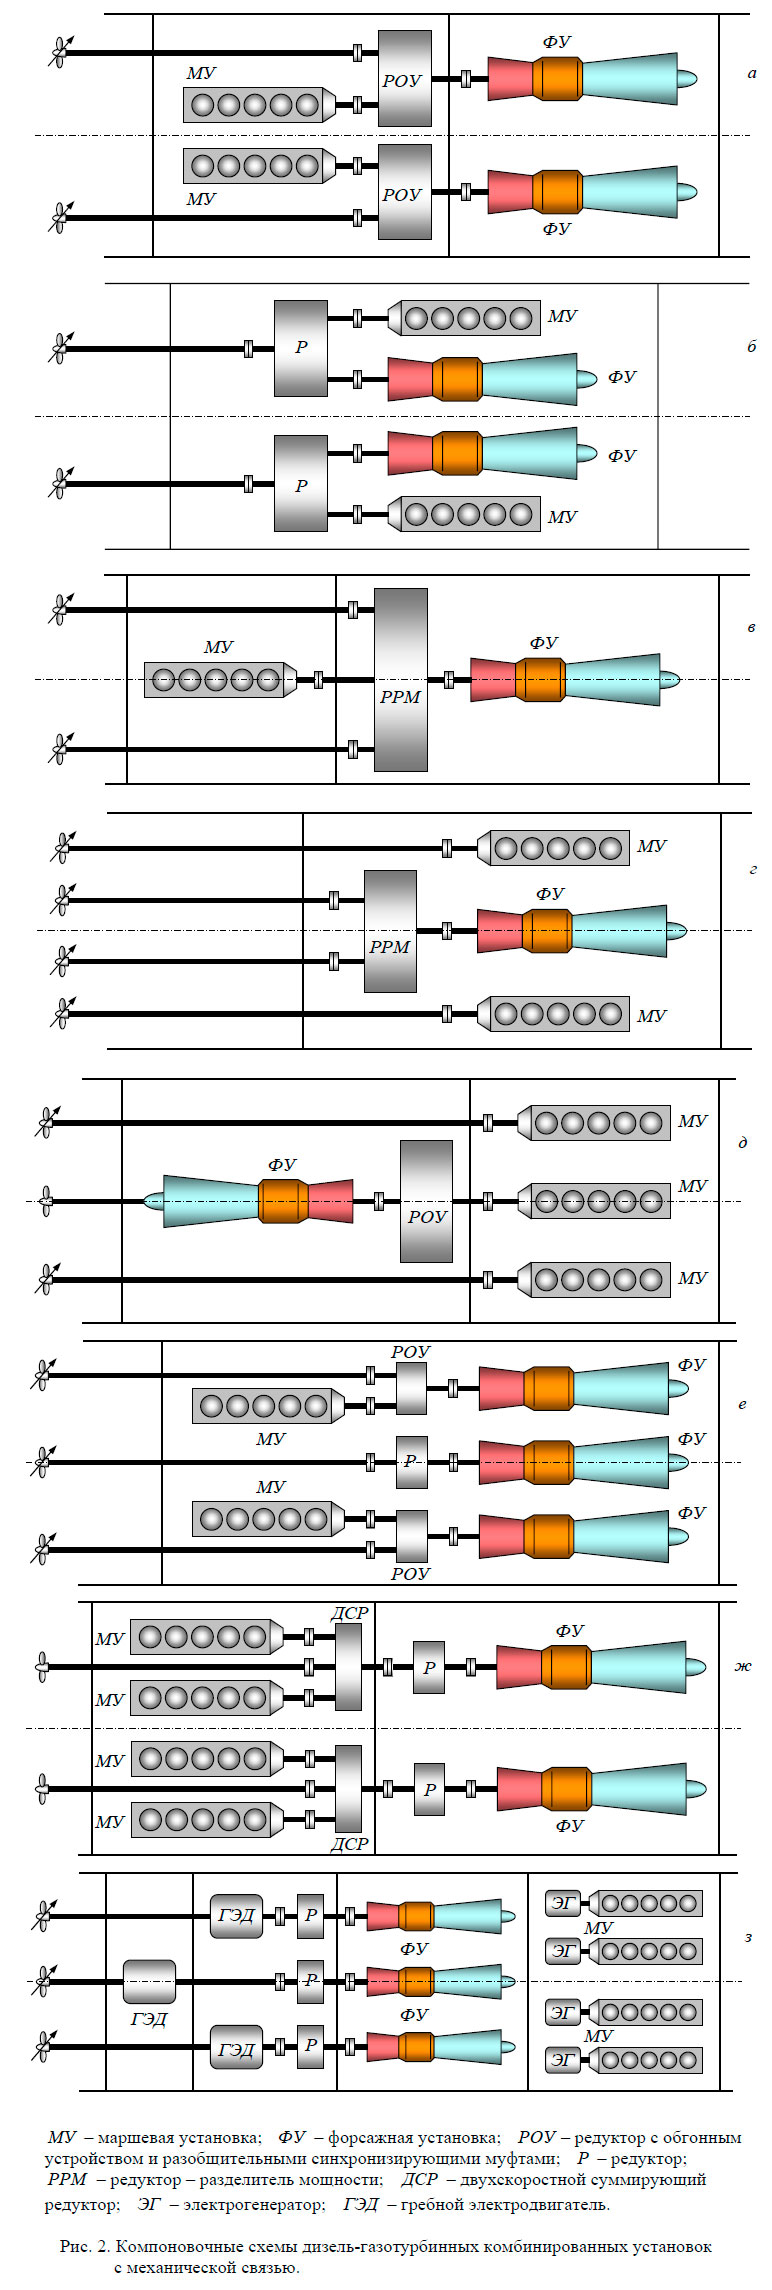 Компоновочные схемы дизель-газотурбинных комбинированных установок
с механической связью